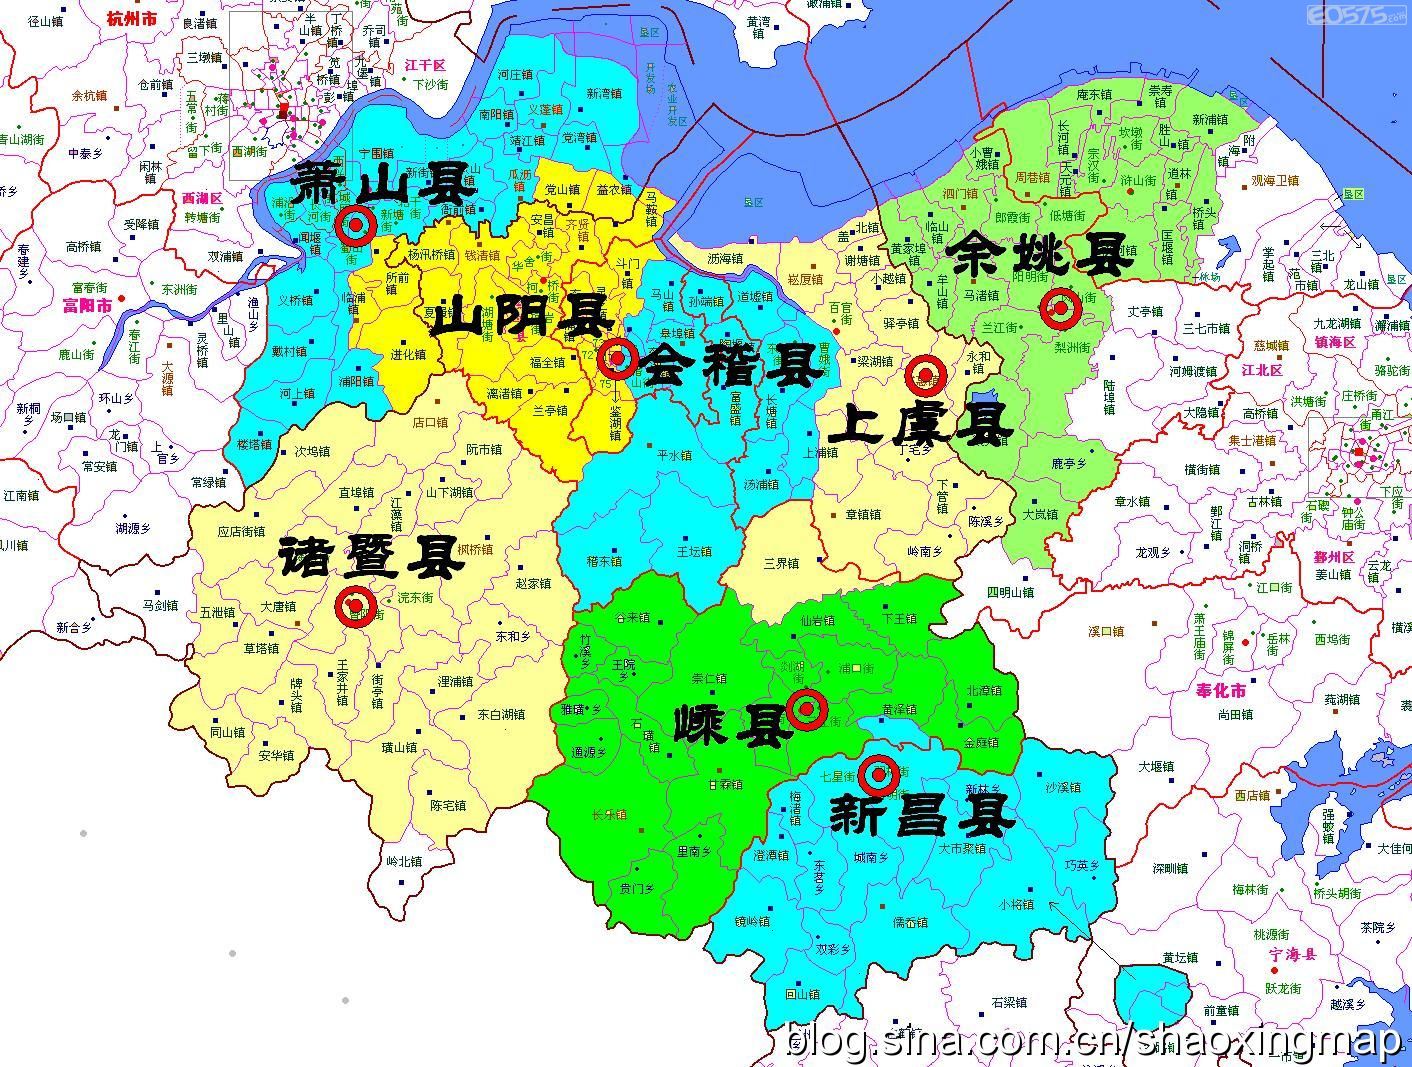 看地图,绍兴府8县